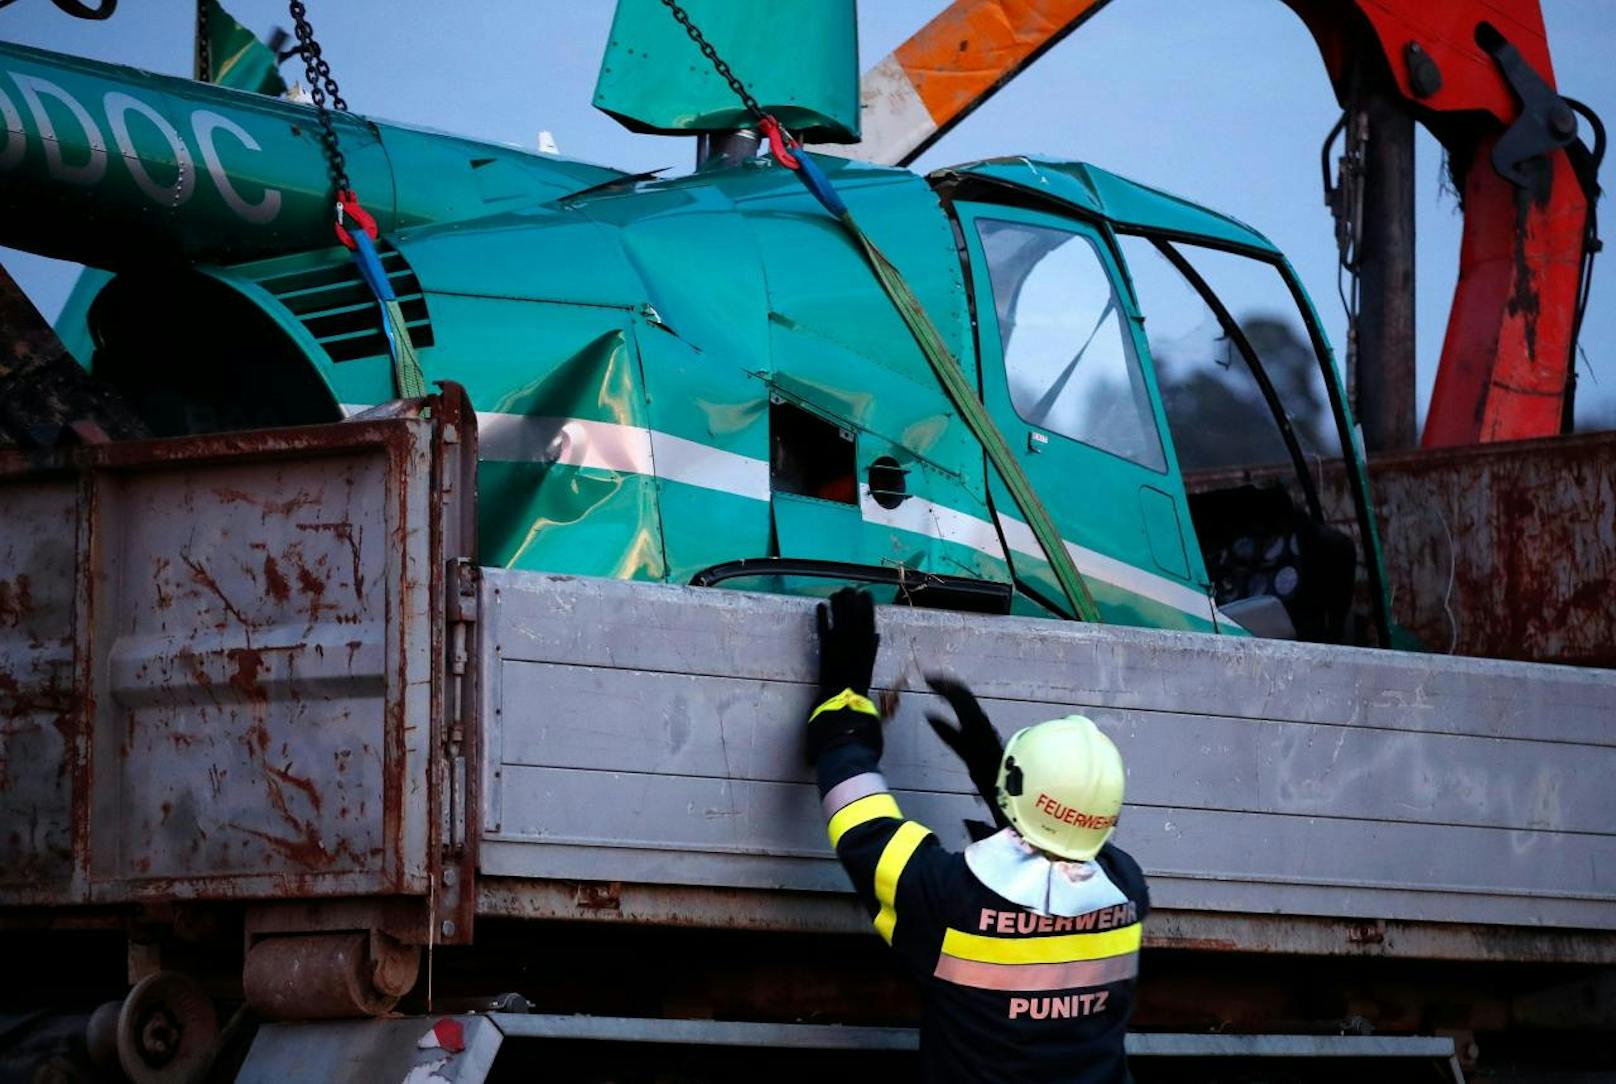 Am 31. Dezember 2019 stürzte im burgenländischen Punitz ein Hubschrauber ab. Alle drei Insassen überlebten. Ein Mann wurde ins Krankenhaus nach Oberwart geflogen.